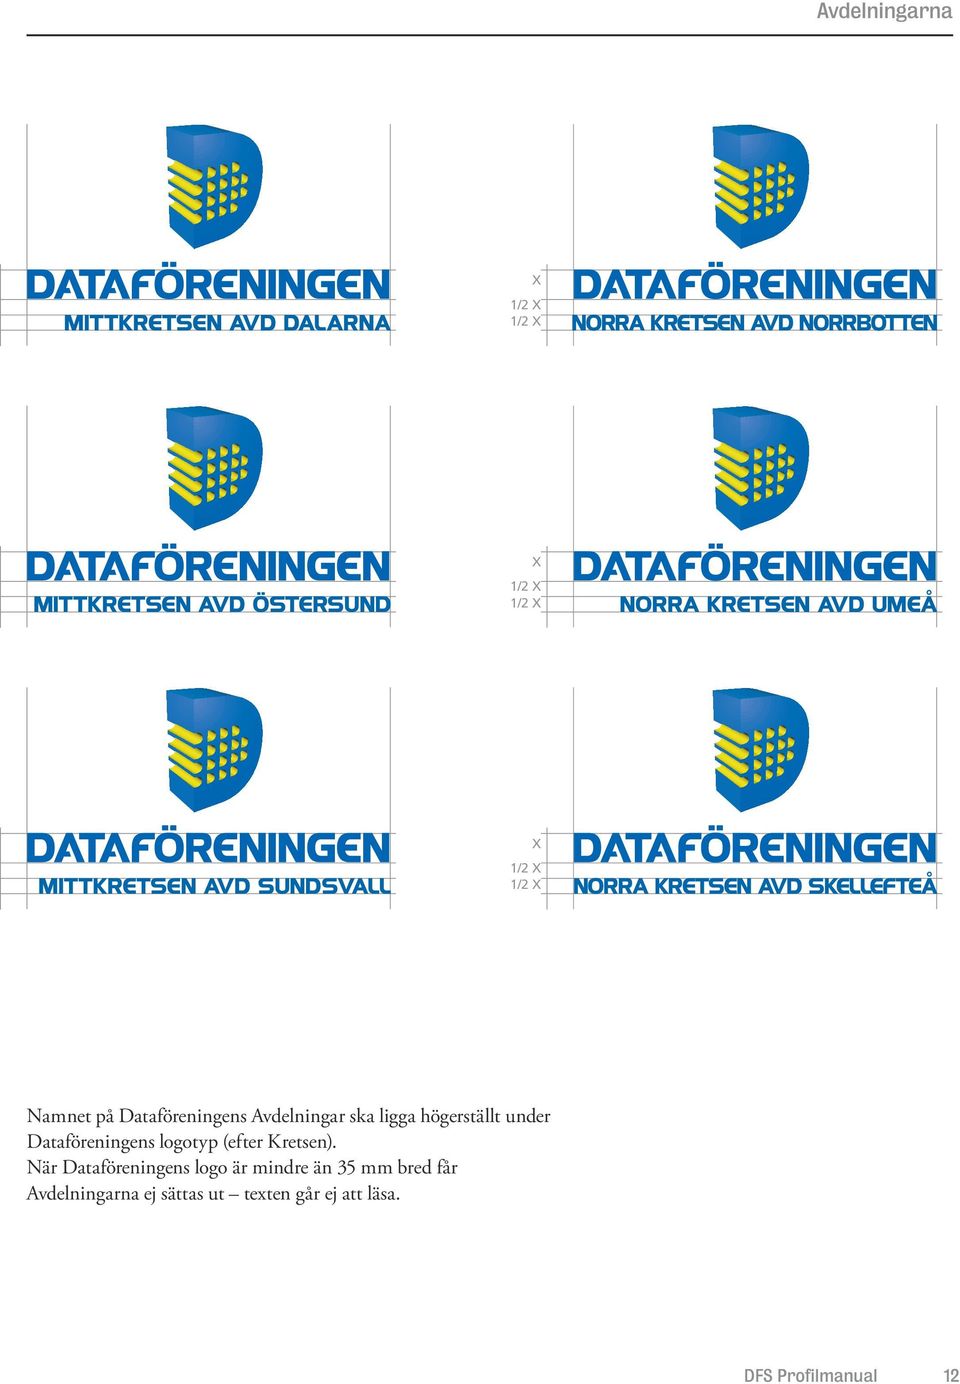 När Dataföreningens logo är mindre än 35 mm bred får Avdelningarna ej användas. Det går ej att läsa.